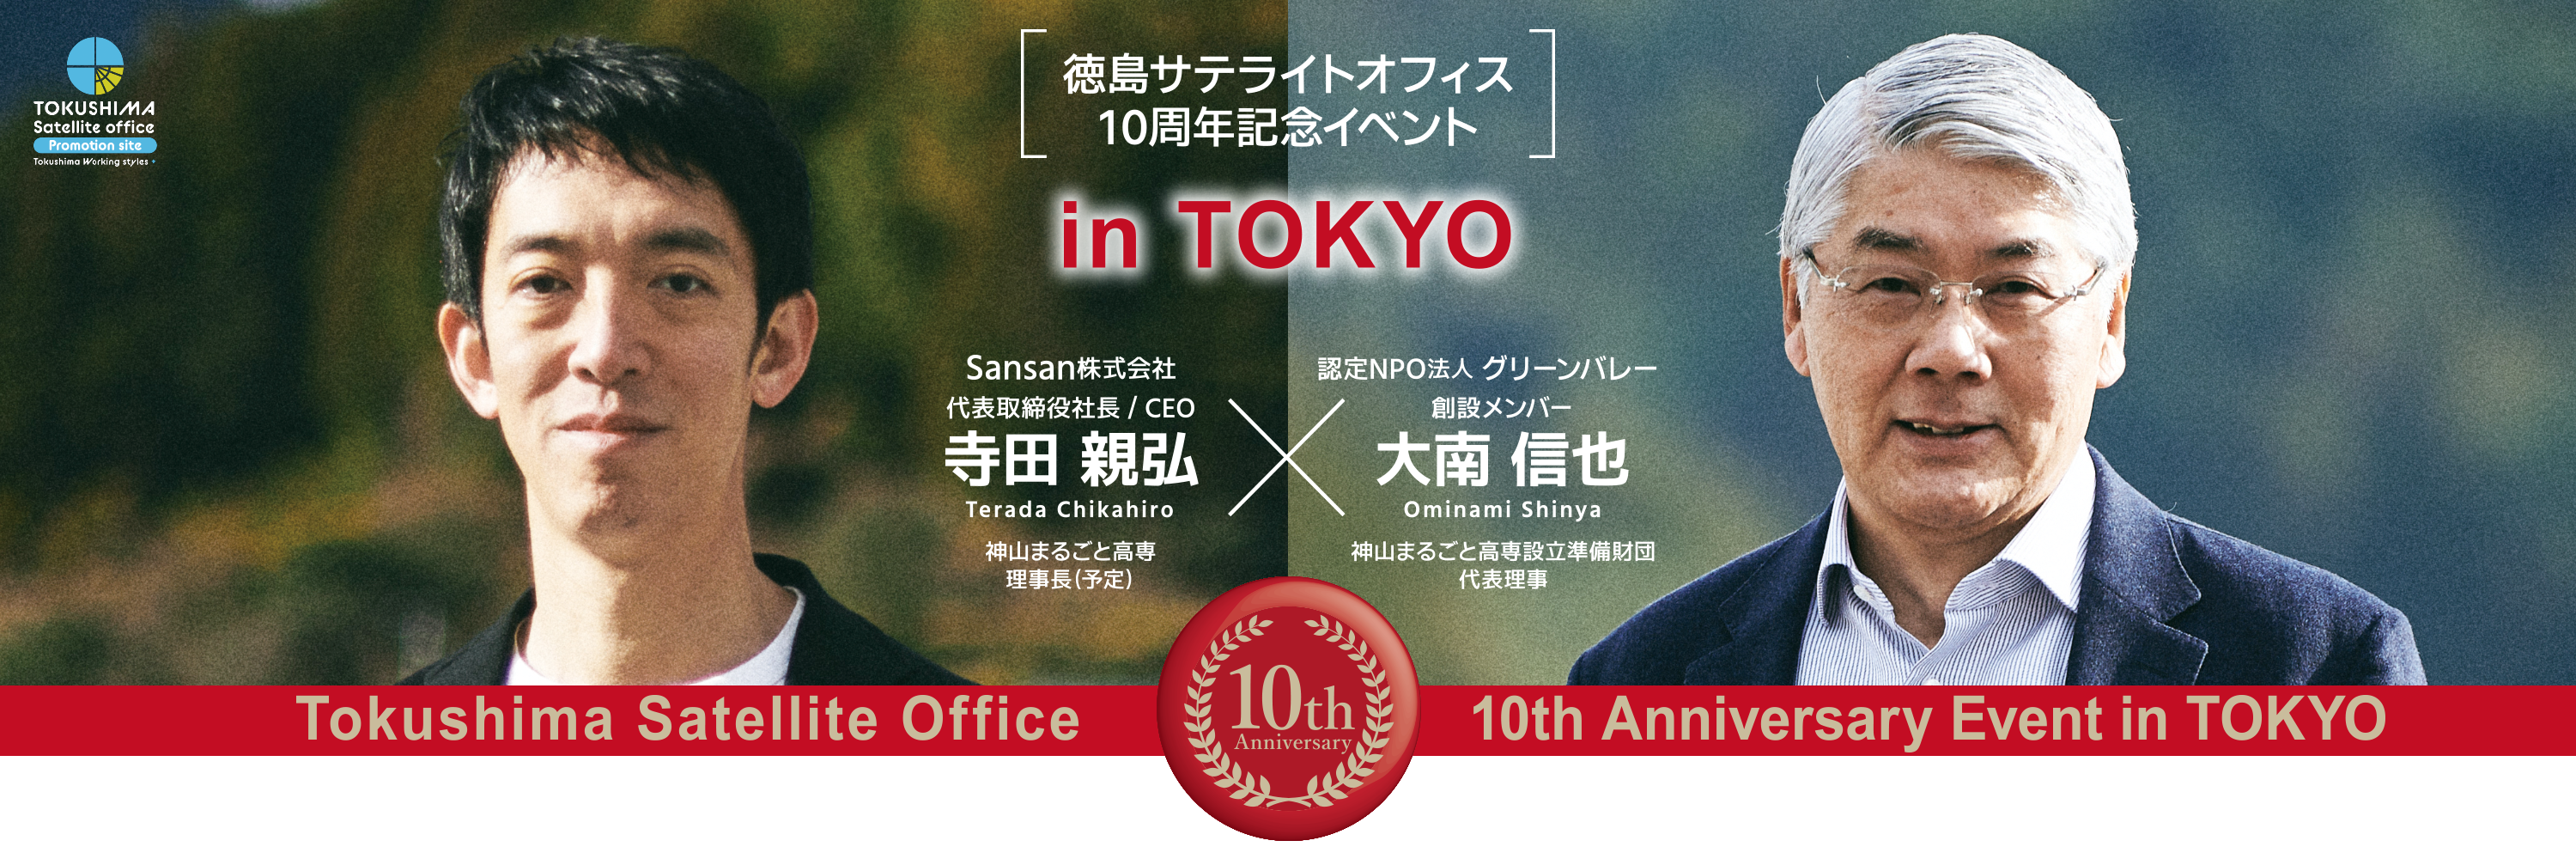 徳島サテライトオフィス10周年記念イベント in 東京